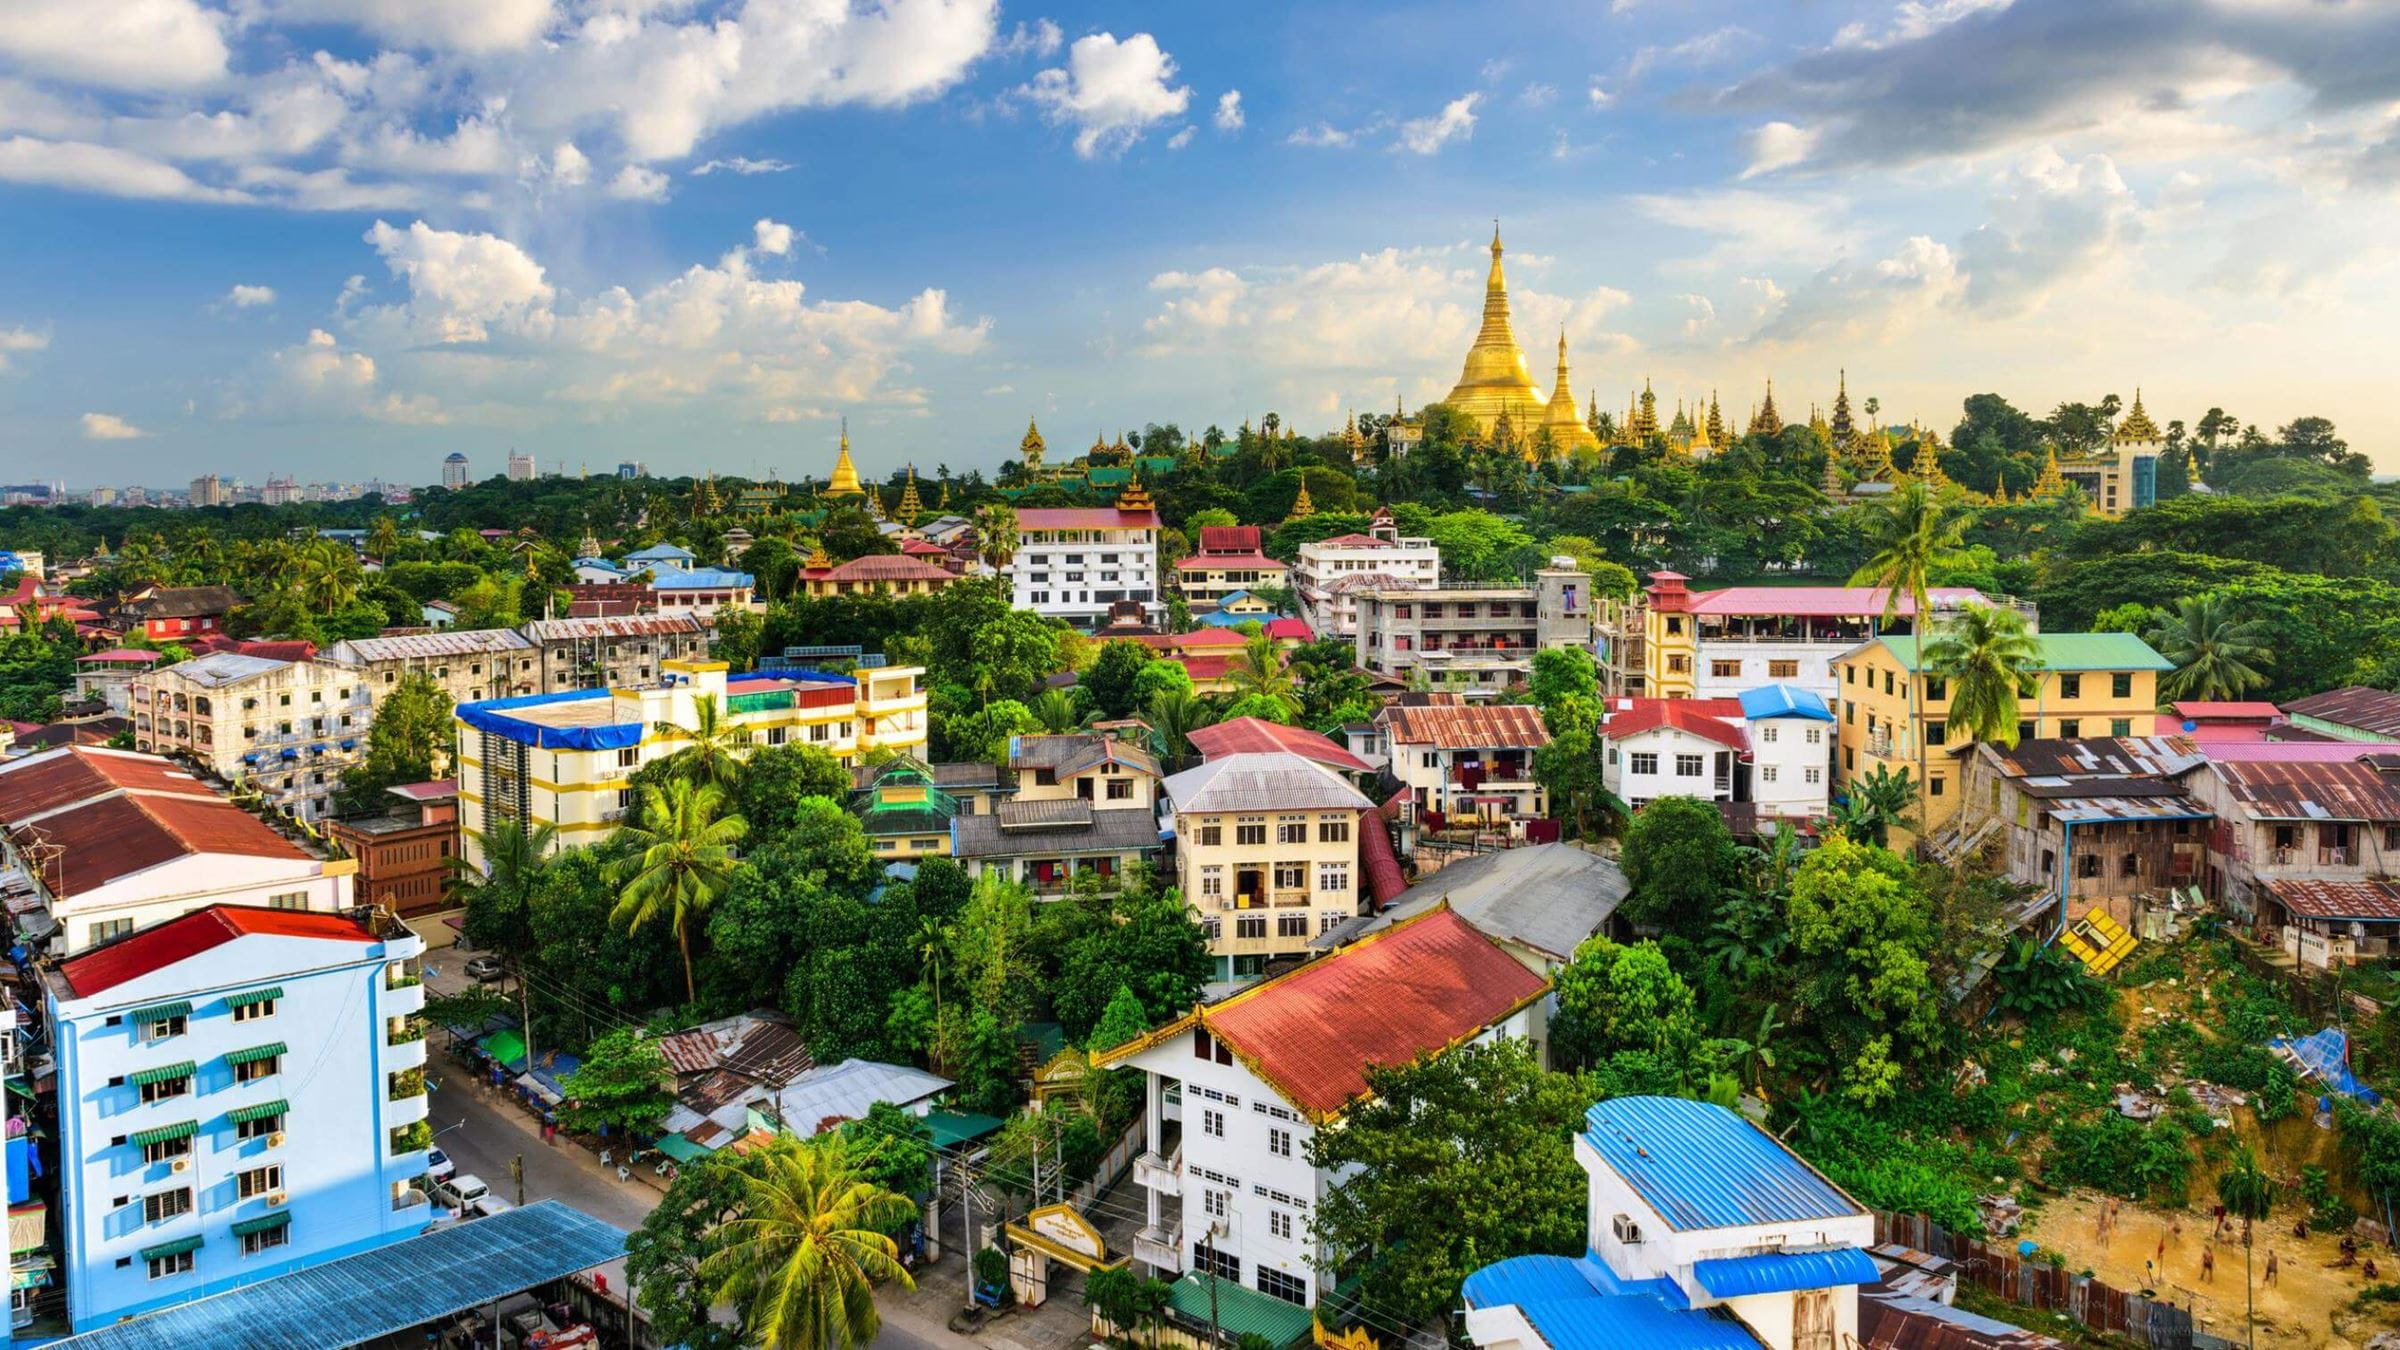 View across rooftops in Myanmar